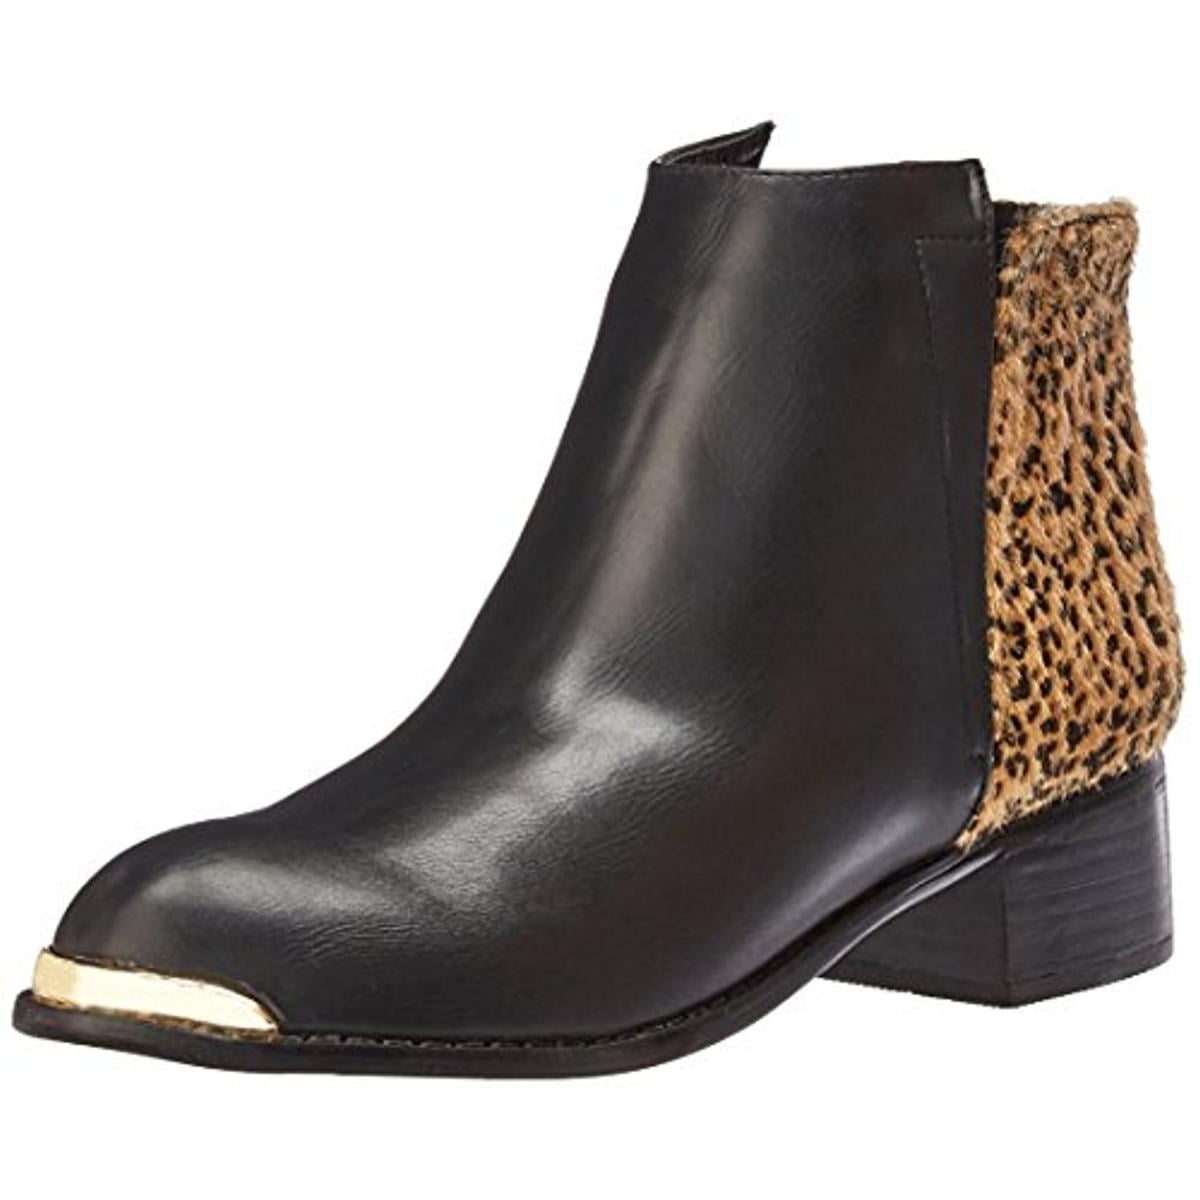 walmart leopard print boots